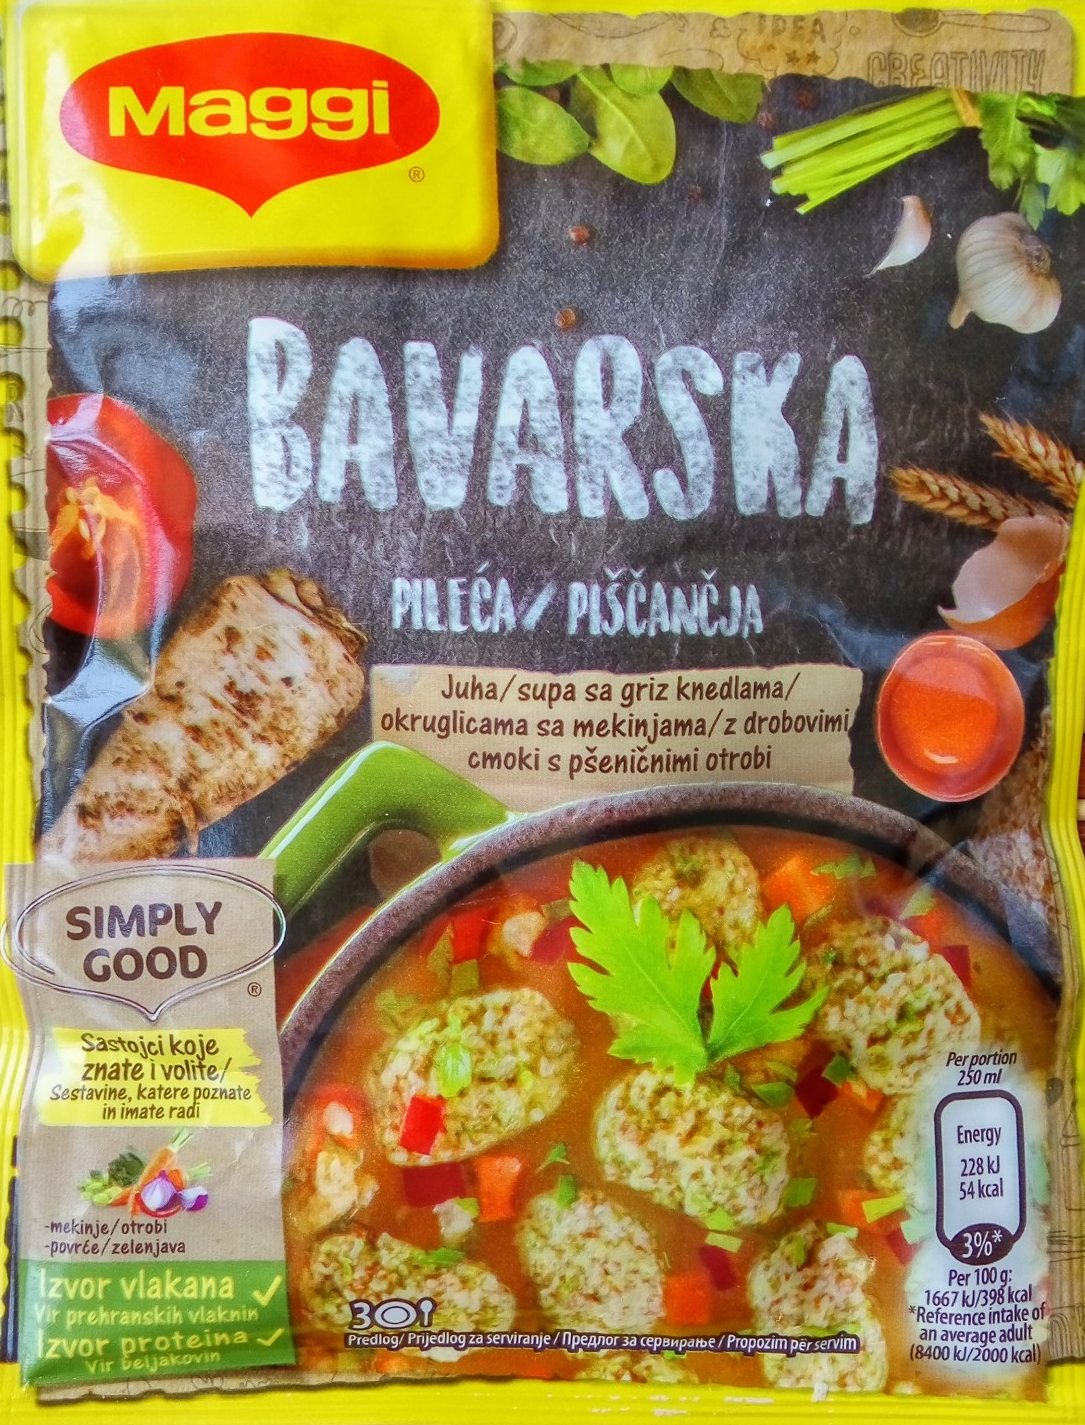 Bavarska pileća supa sa griz knedlama - Производ